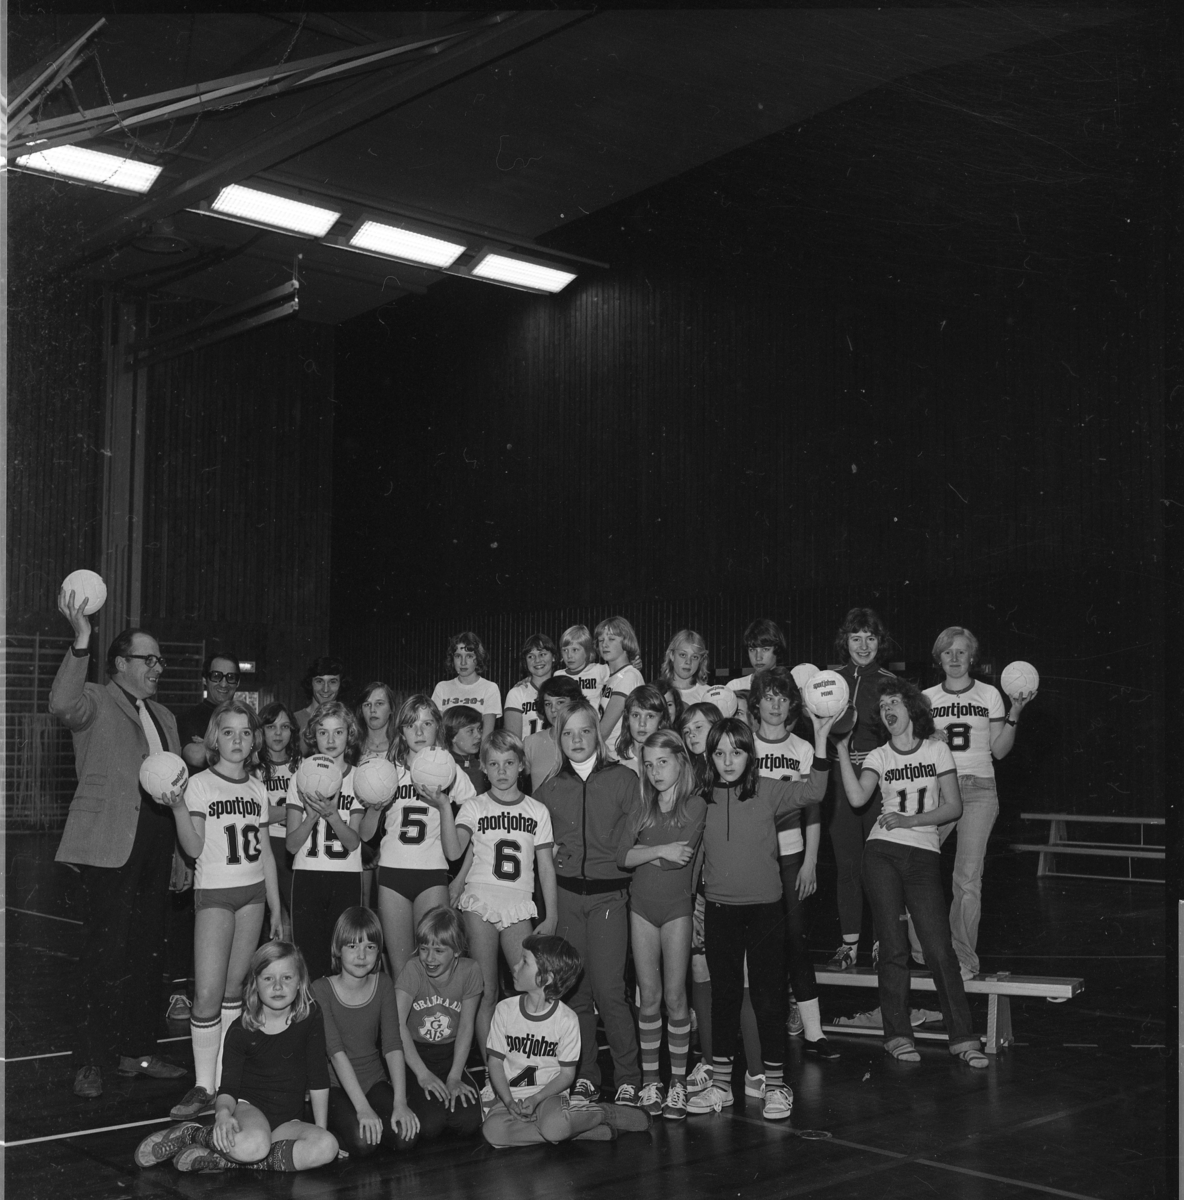 Ungdomar i Gränna AIS handbollssektion står uppställda med handbollar i händerna i Ribbahallen. De bär t-shirts märkta "Sportjohan" och en siffra. Två män står till vänster. Det är representant för Rotary Gränna respektive handbollstränaren.